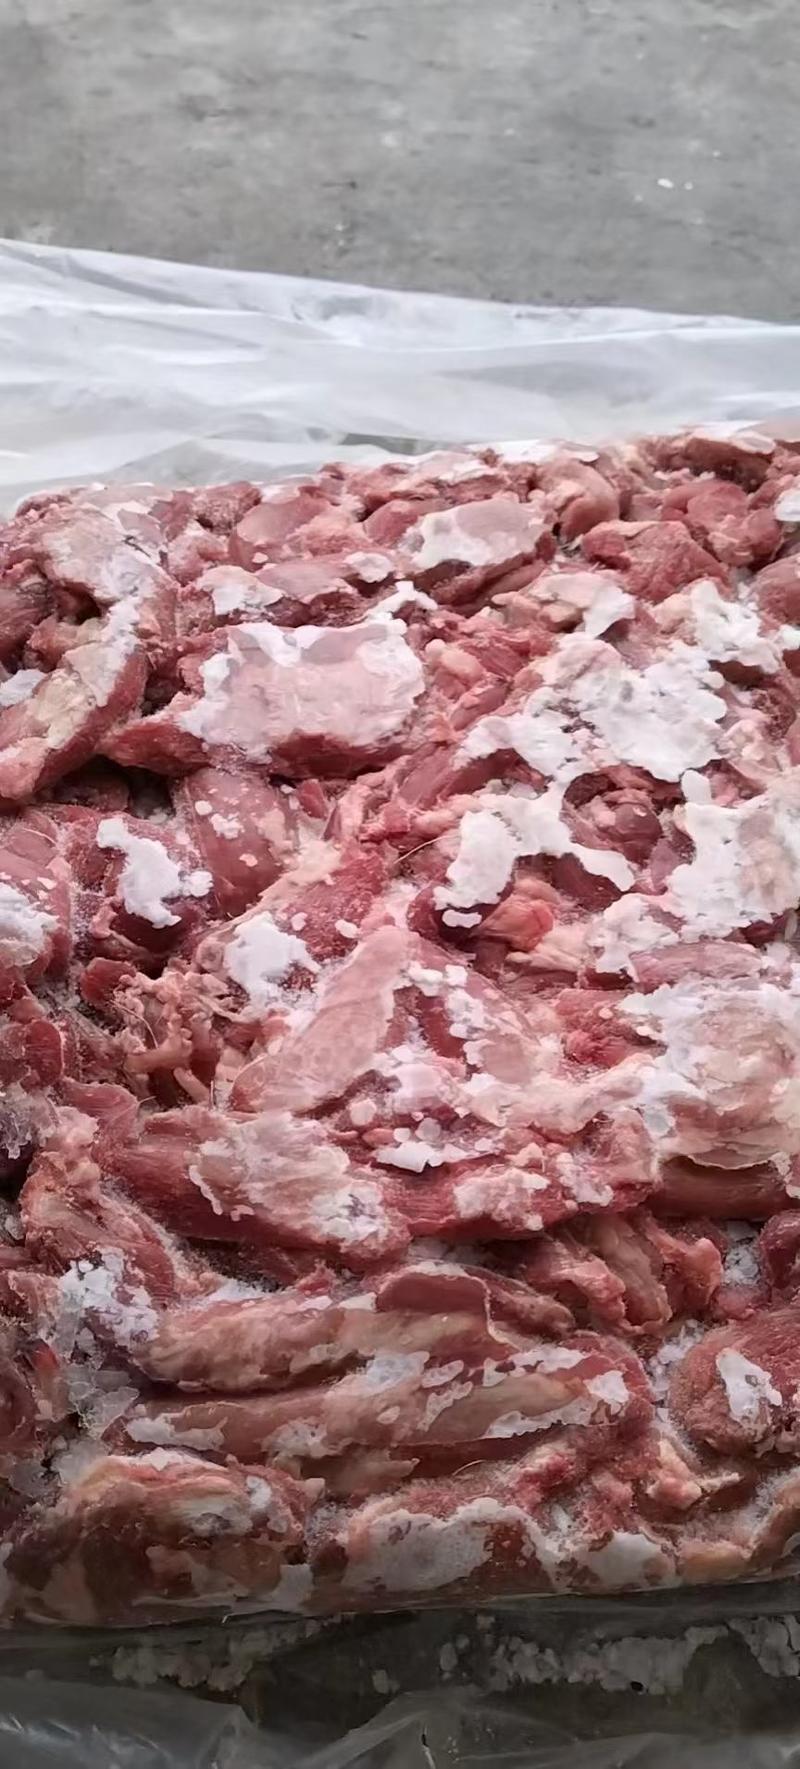 羔羊脖肉精修去油都是大块的脖肉穿串烧烤用